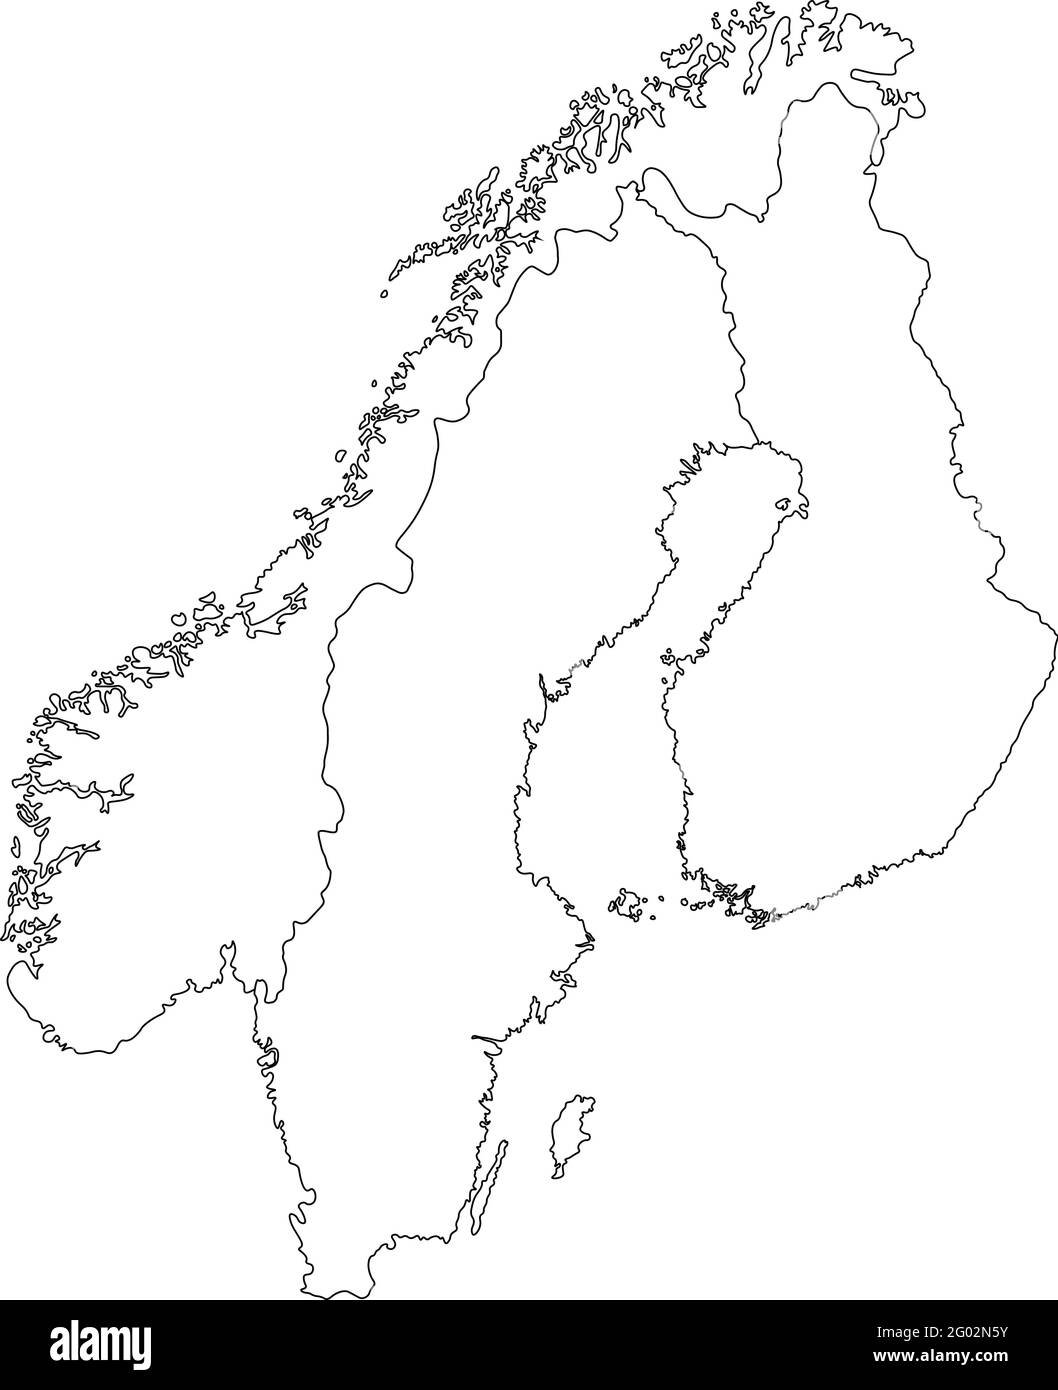 Illustrazione vettoriale con mappa semplificata degli stati scandinavi europei (Finlandia, Norvegia, Svezia). Silhouette bianche, profilo nero e sfondo Illustrazione Vettoriale